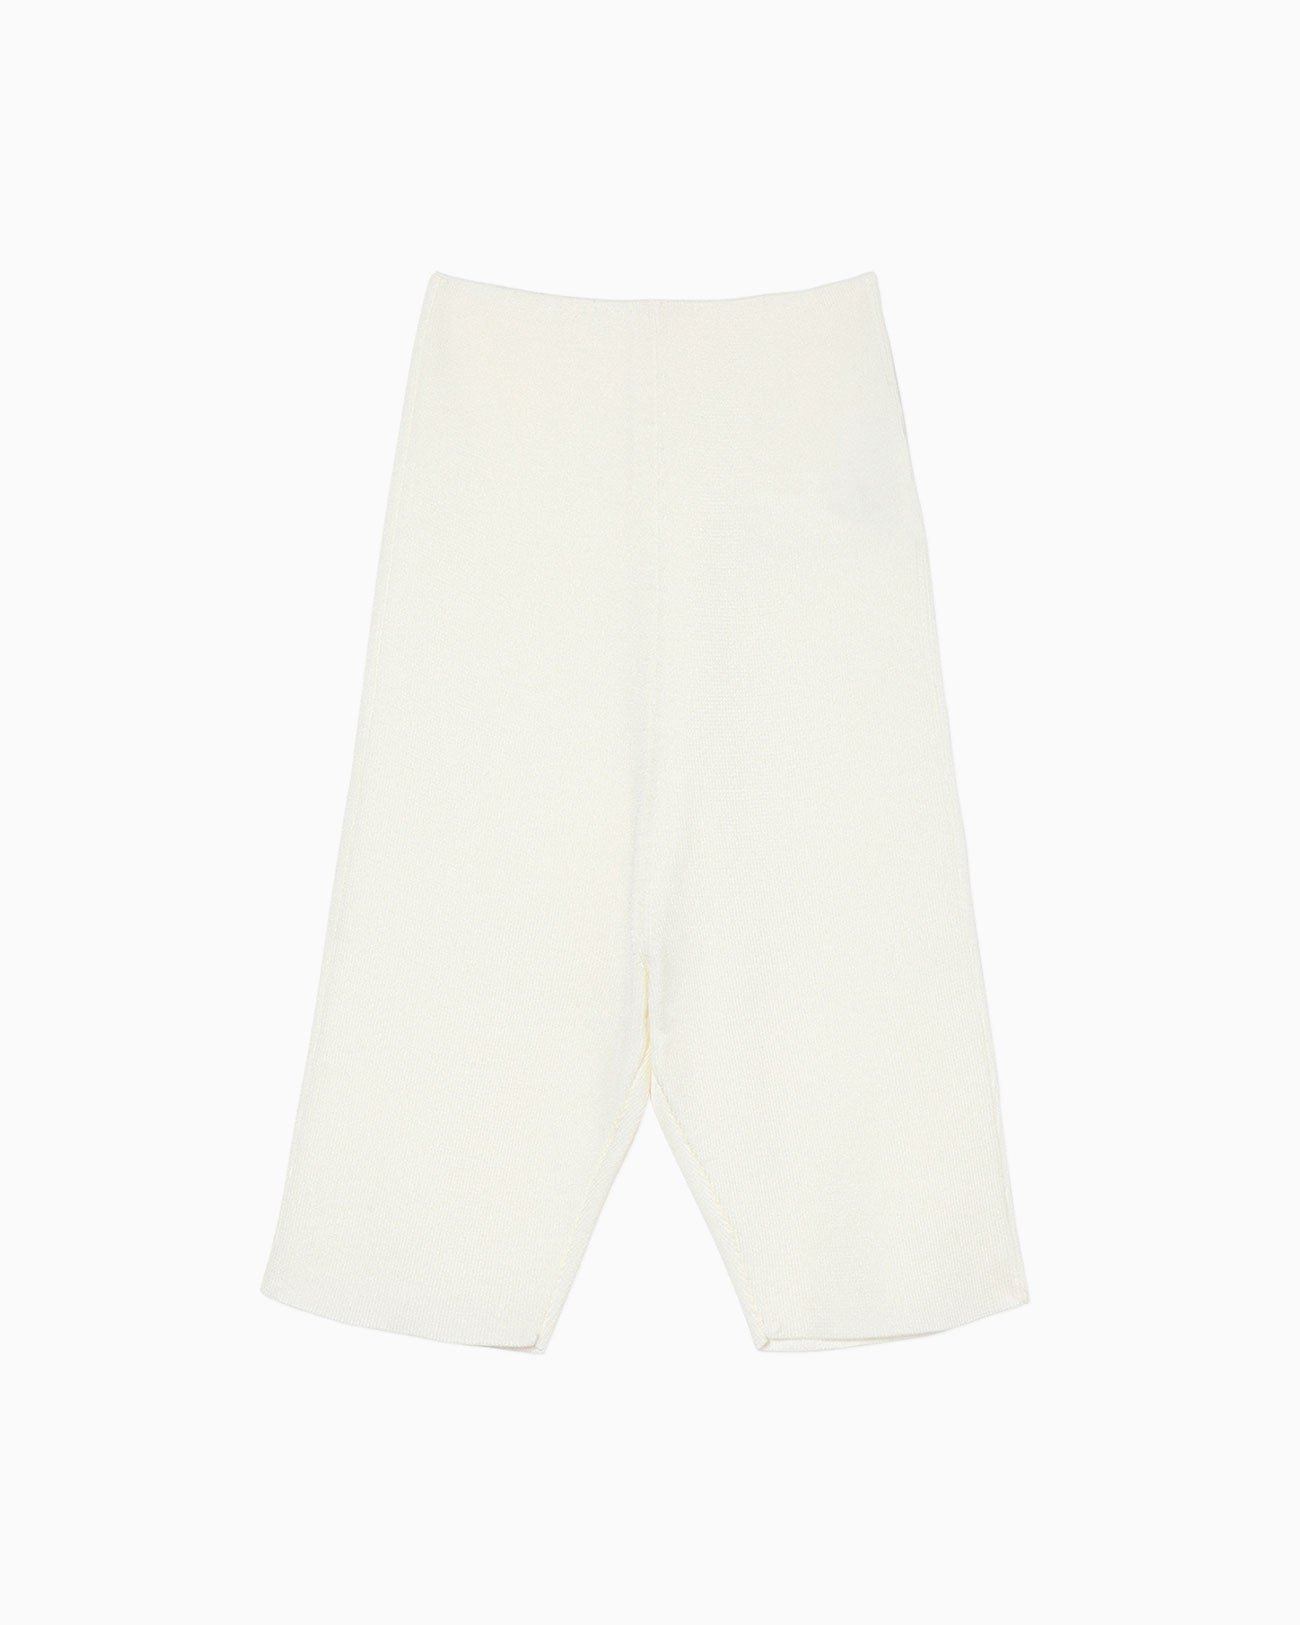 Knitted Inner Shorts - white